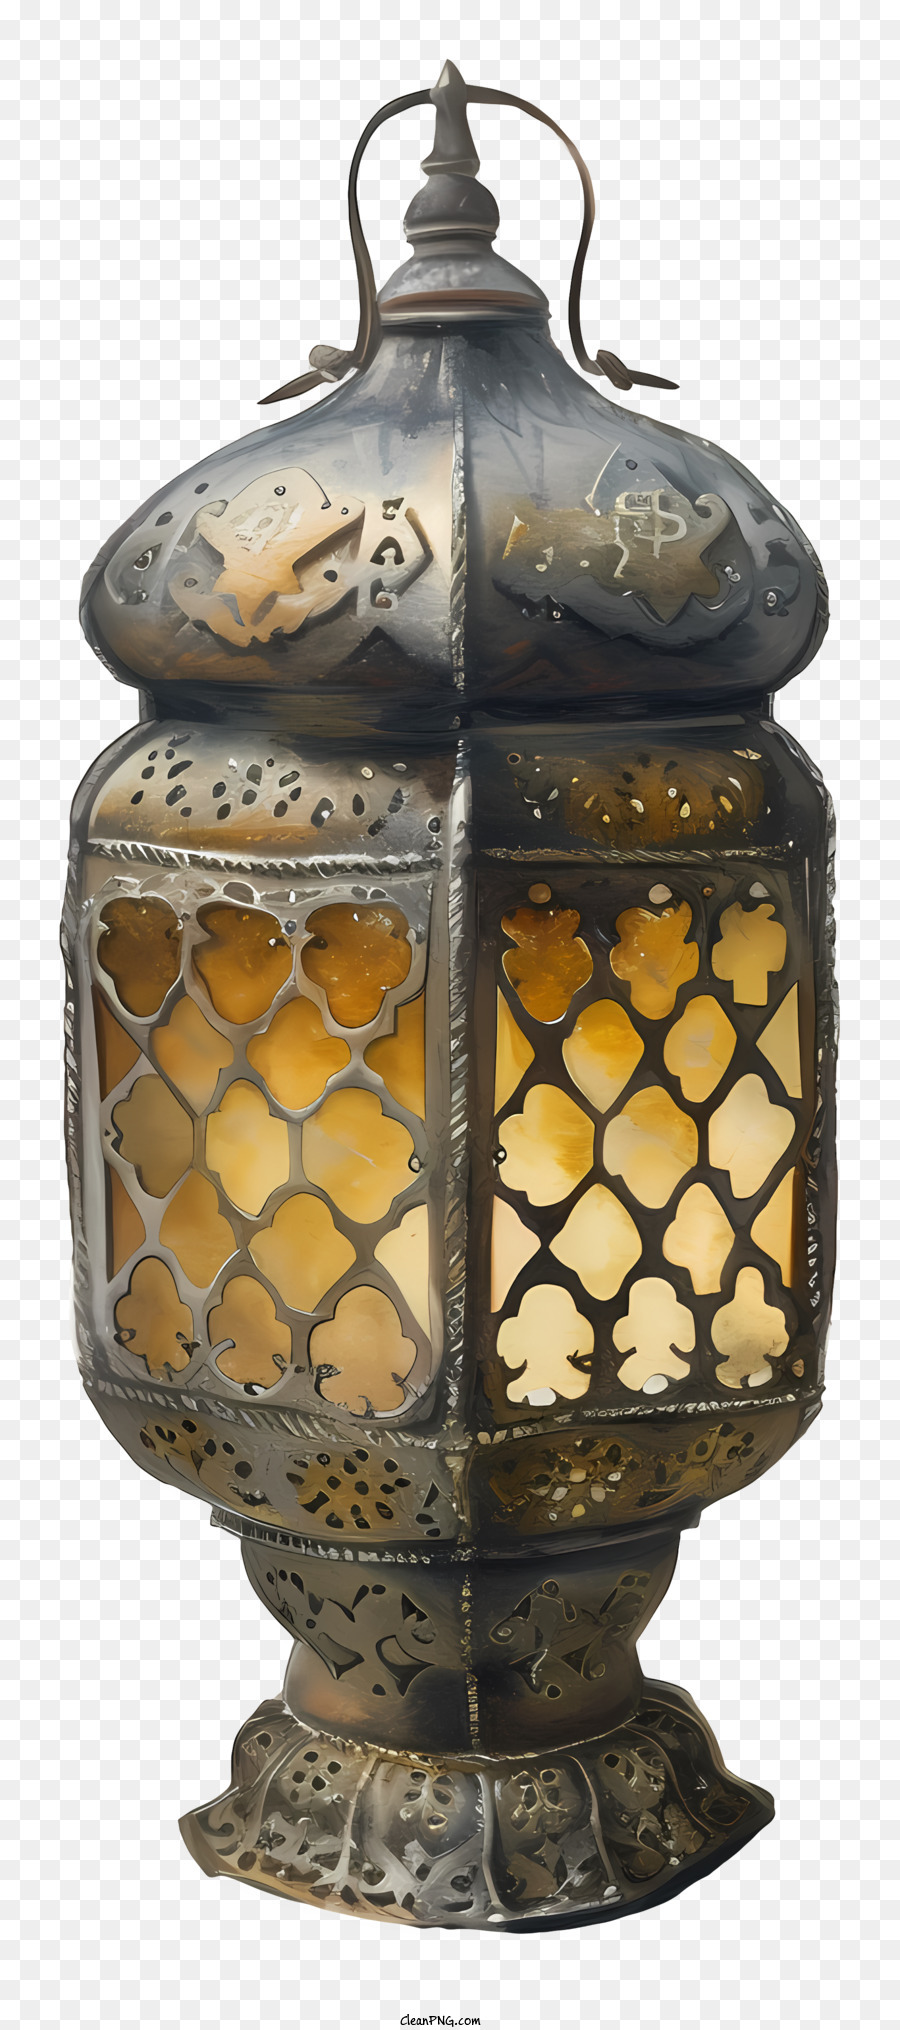 islamische Lampe - Komplizierte Metalllaterne mit goldenem Finish und Mustern